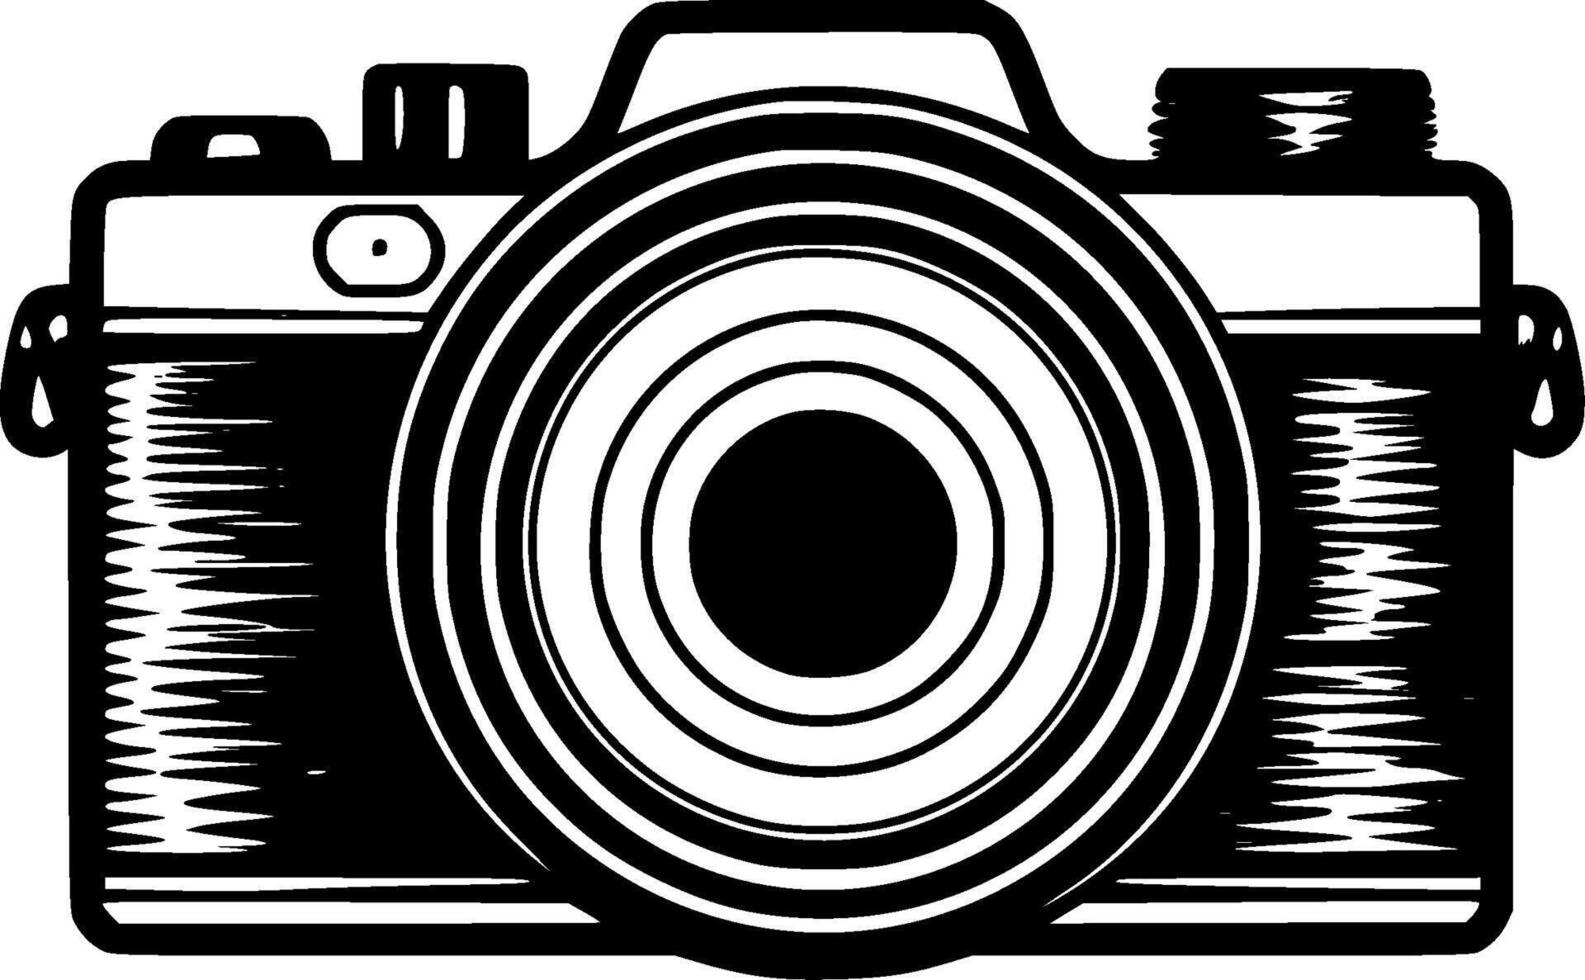 telecamera - nero e bianca isolato icona - vettore illustrazione